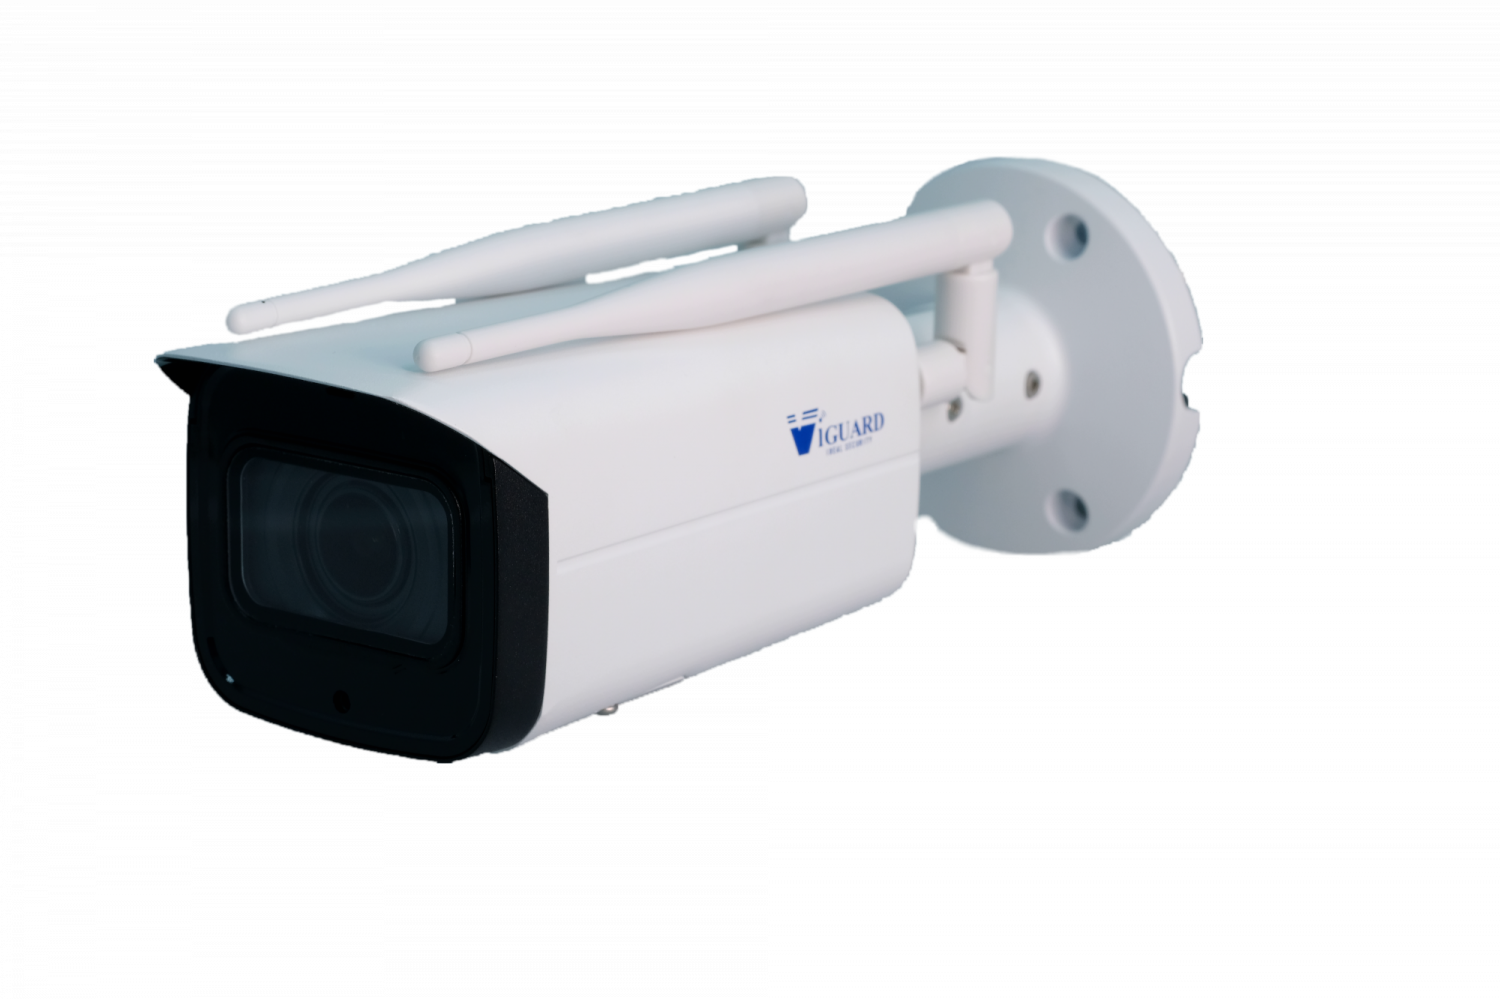 Камера 4g отзывы. IP-камера Axis m2025-le. IP камера Axis m2025-le белый. VIGUARD камера. Видеокамера VIGUARD a6 4g.